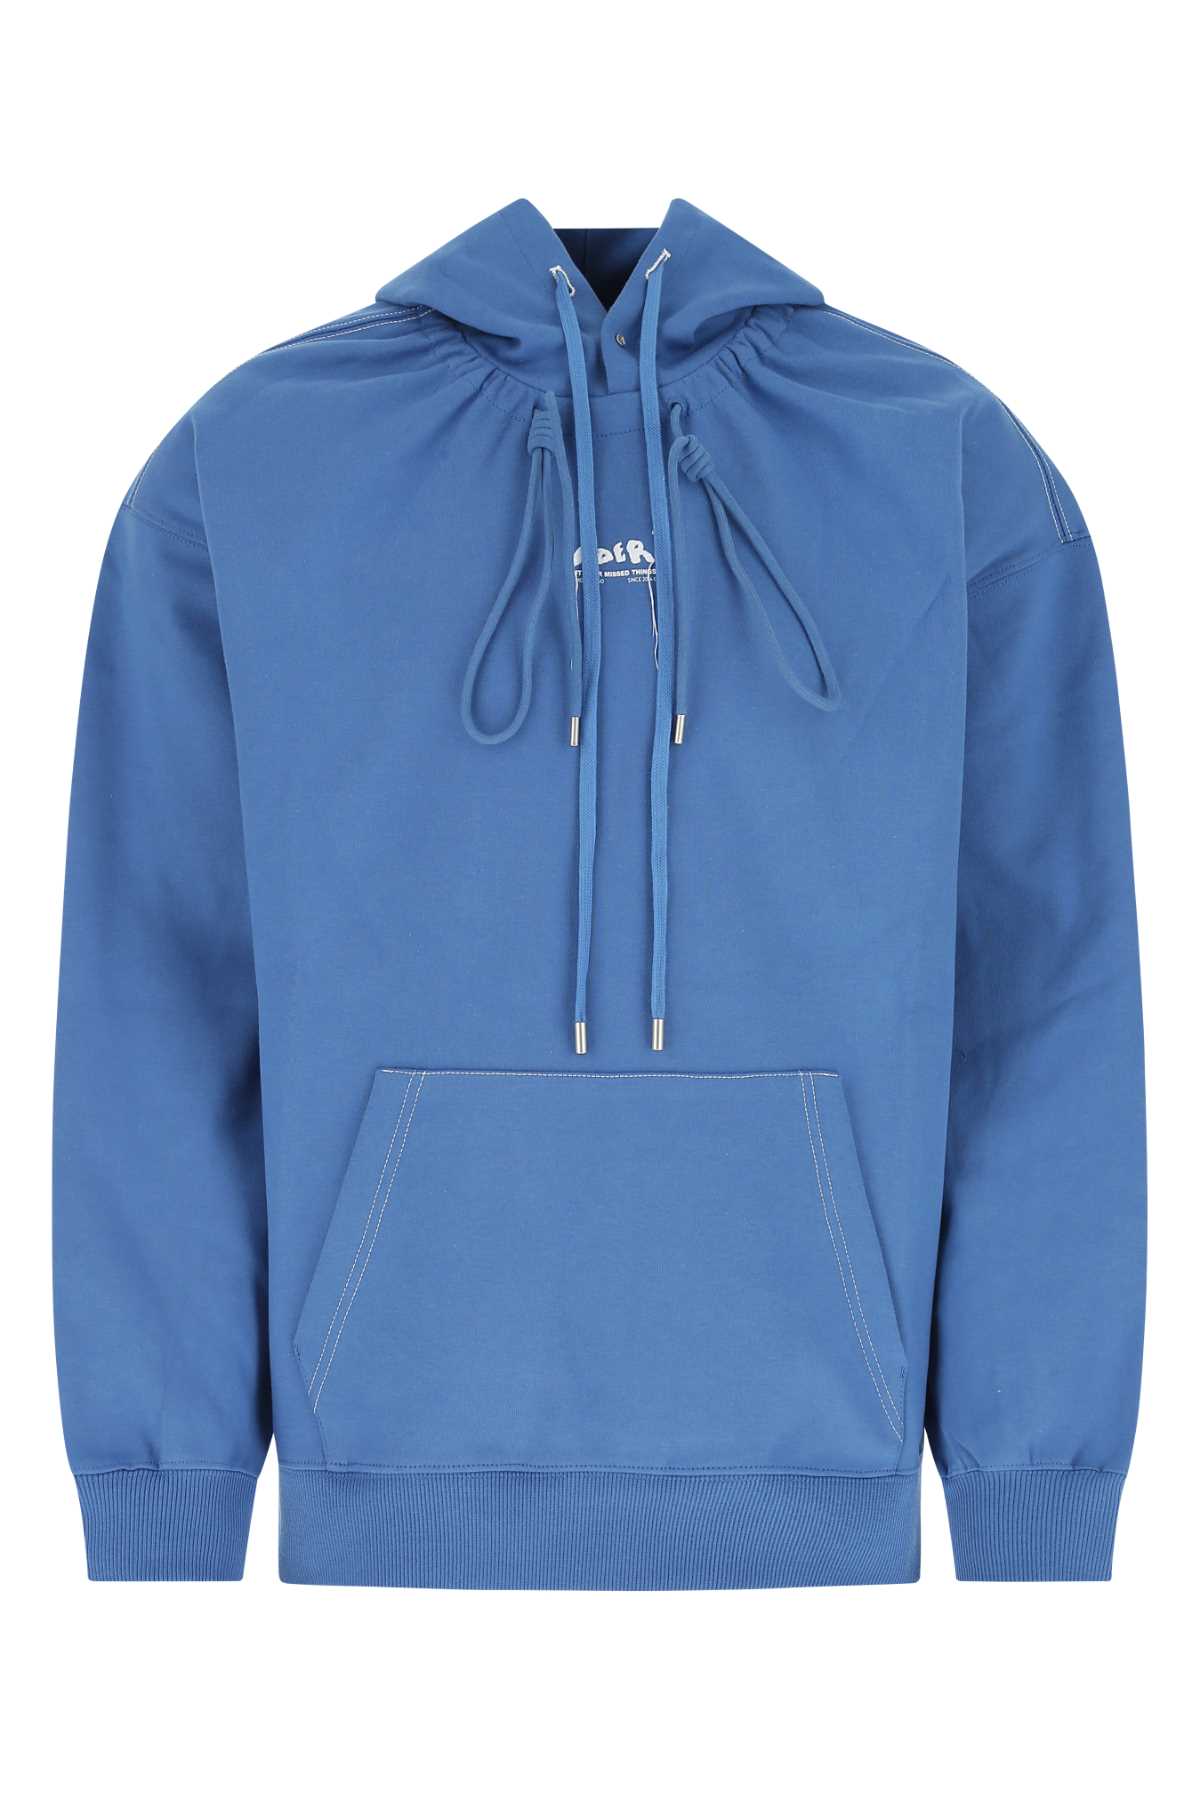 Shop Ader Error Cerulean Blue Cotton Blend Sweatshirt